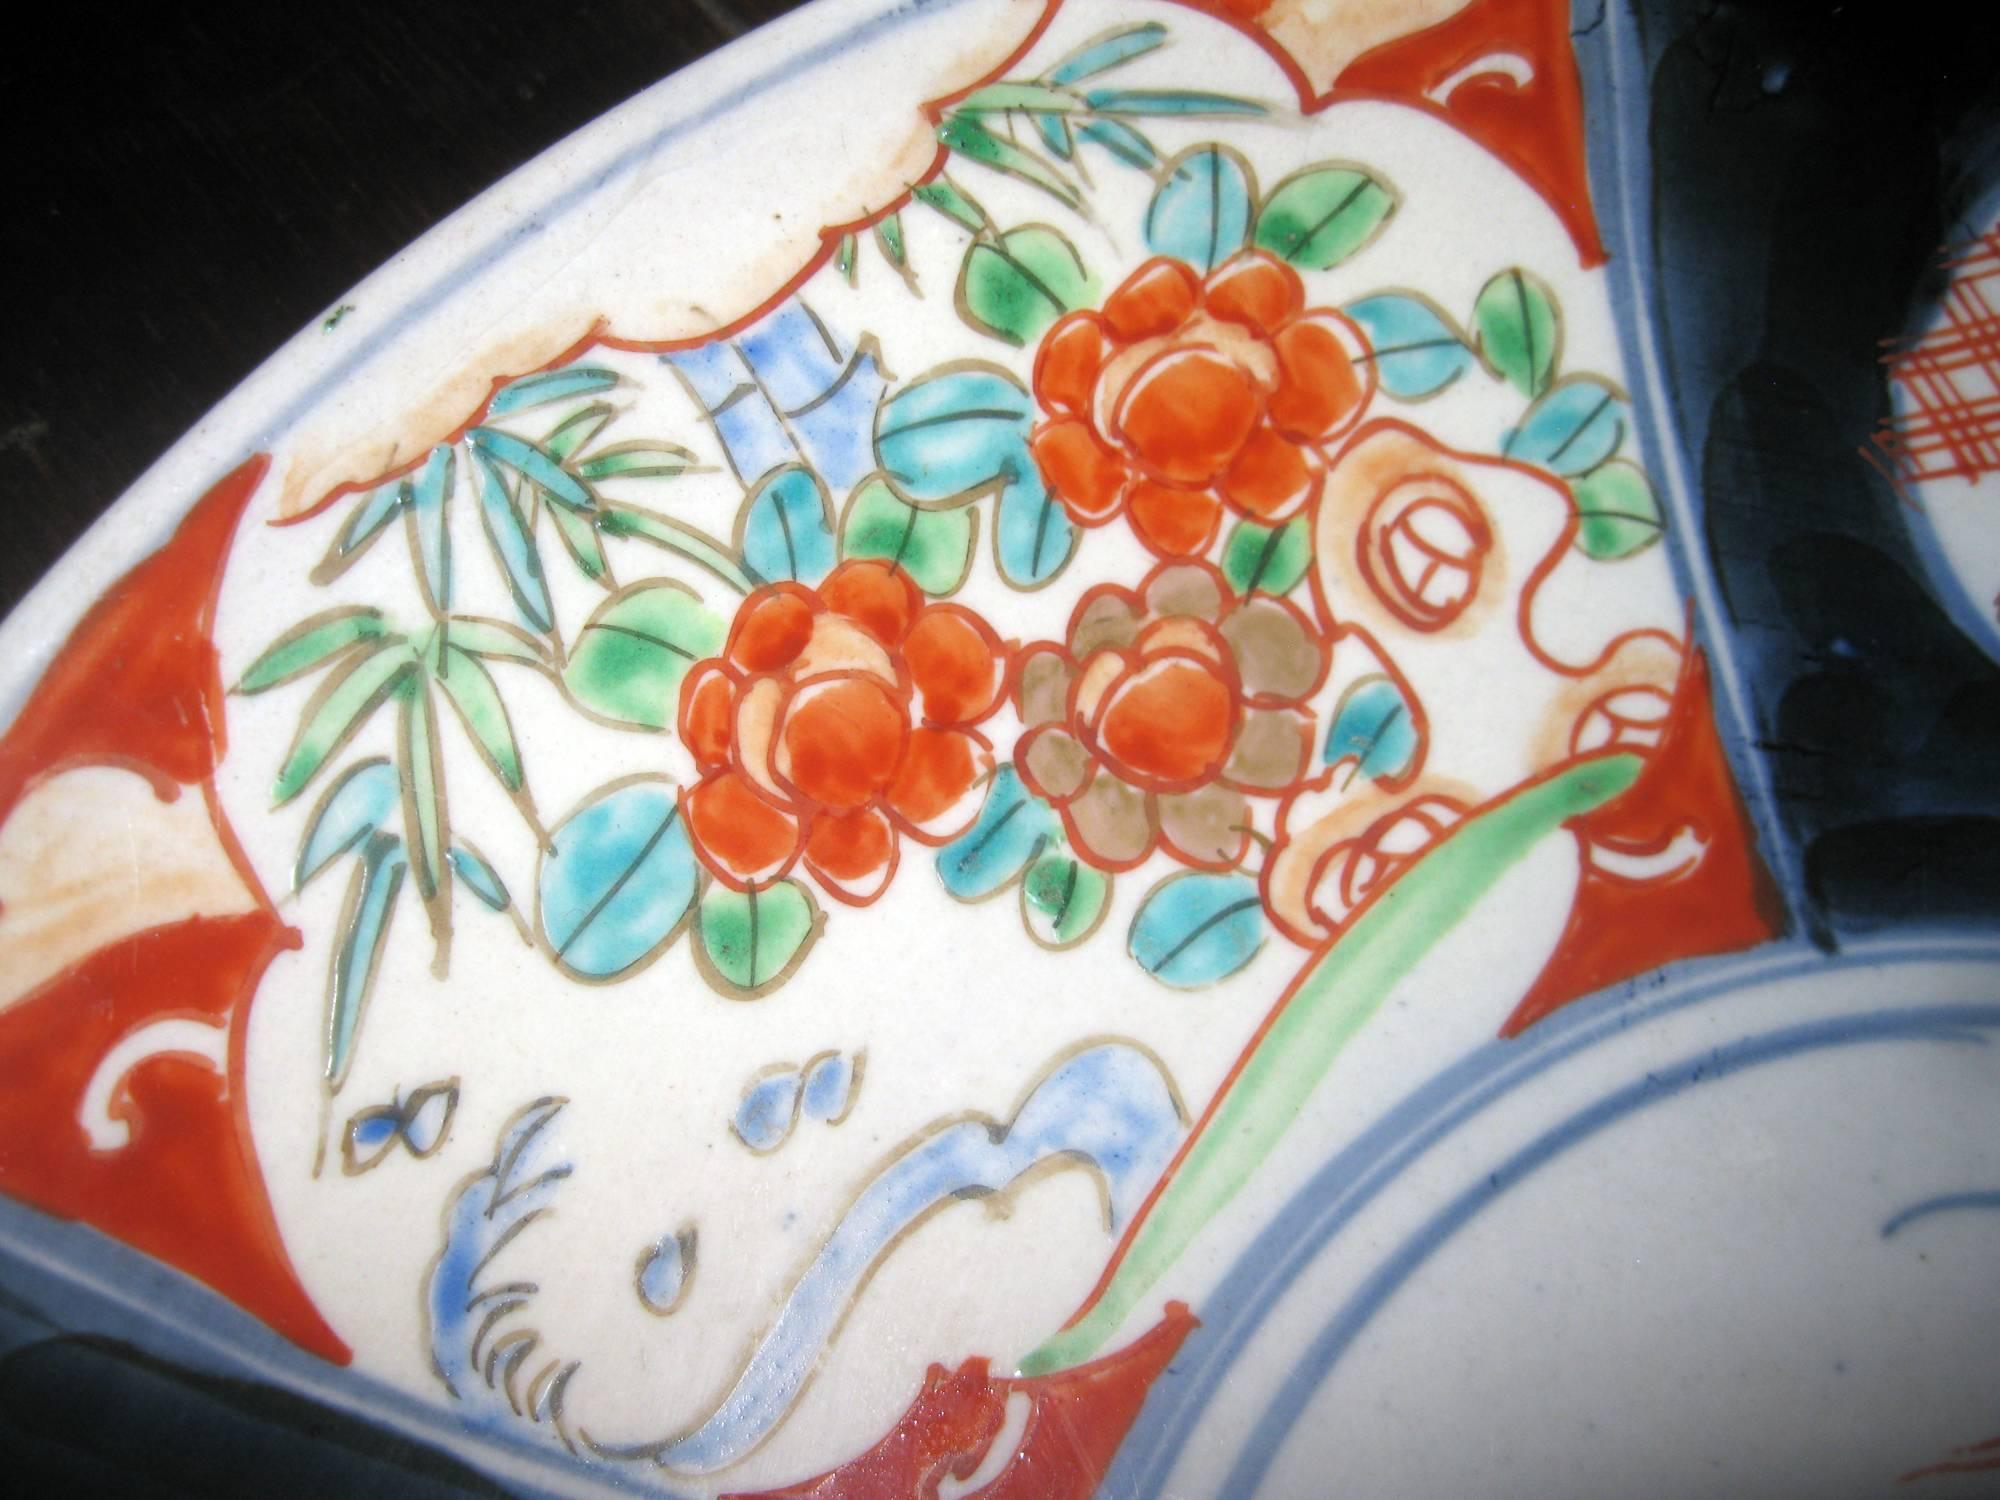 Japanisches Ladegerät aus der Meiji-Dynastie in einer provinziellen Imari-Palette. Zu den Merkmalen gehören sechs florale Tafeln in einer Palette von fünf Farben und eine etwas schlichte Dekoration im mittleren Medaillon. Auffällige kobaltfarbene